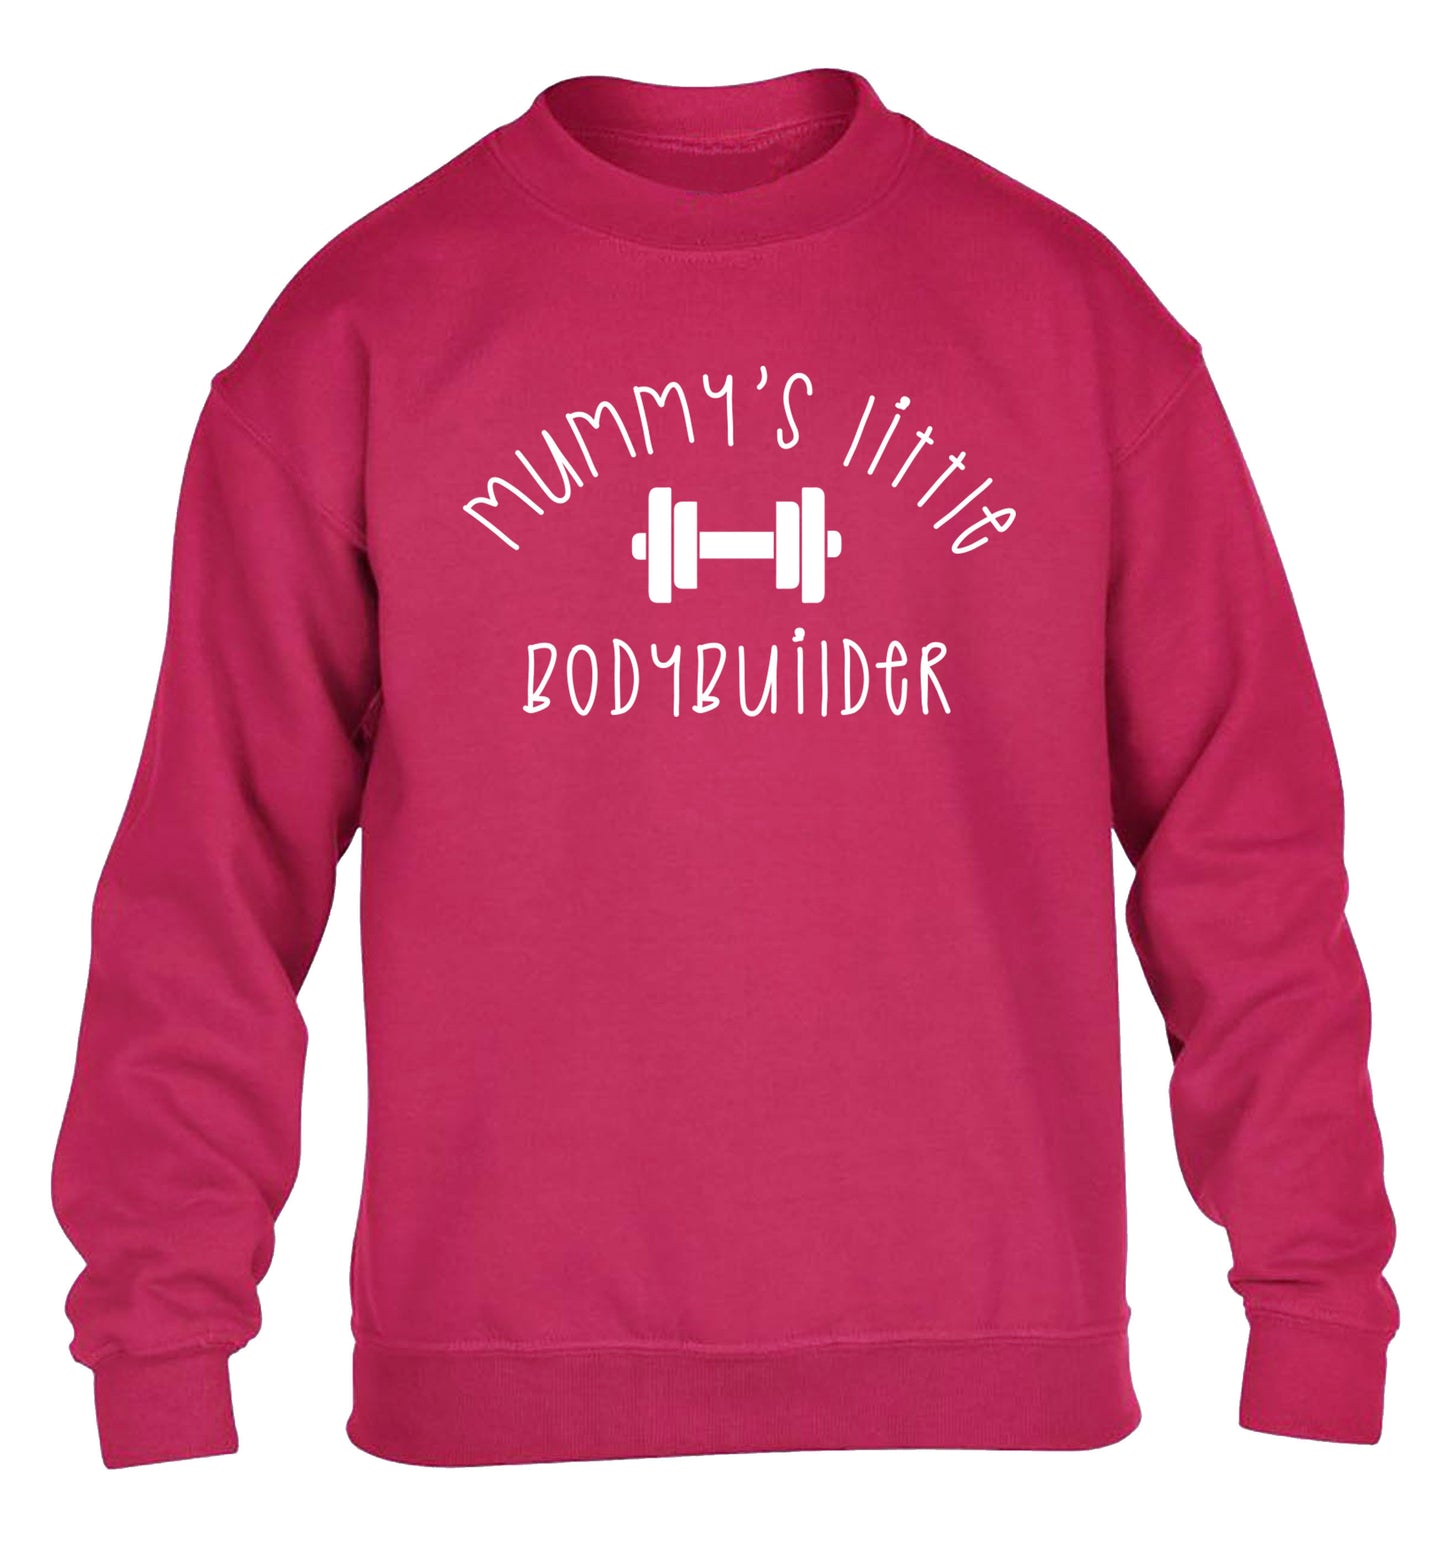 Mummy's little bodybuilder children's pink sweater 12-14 Years